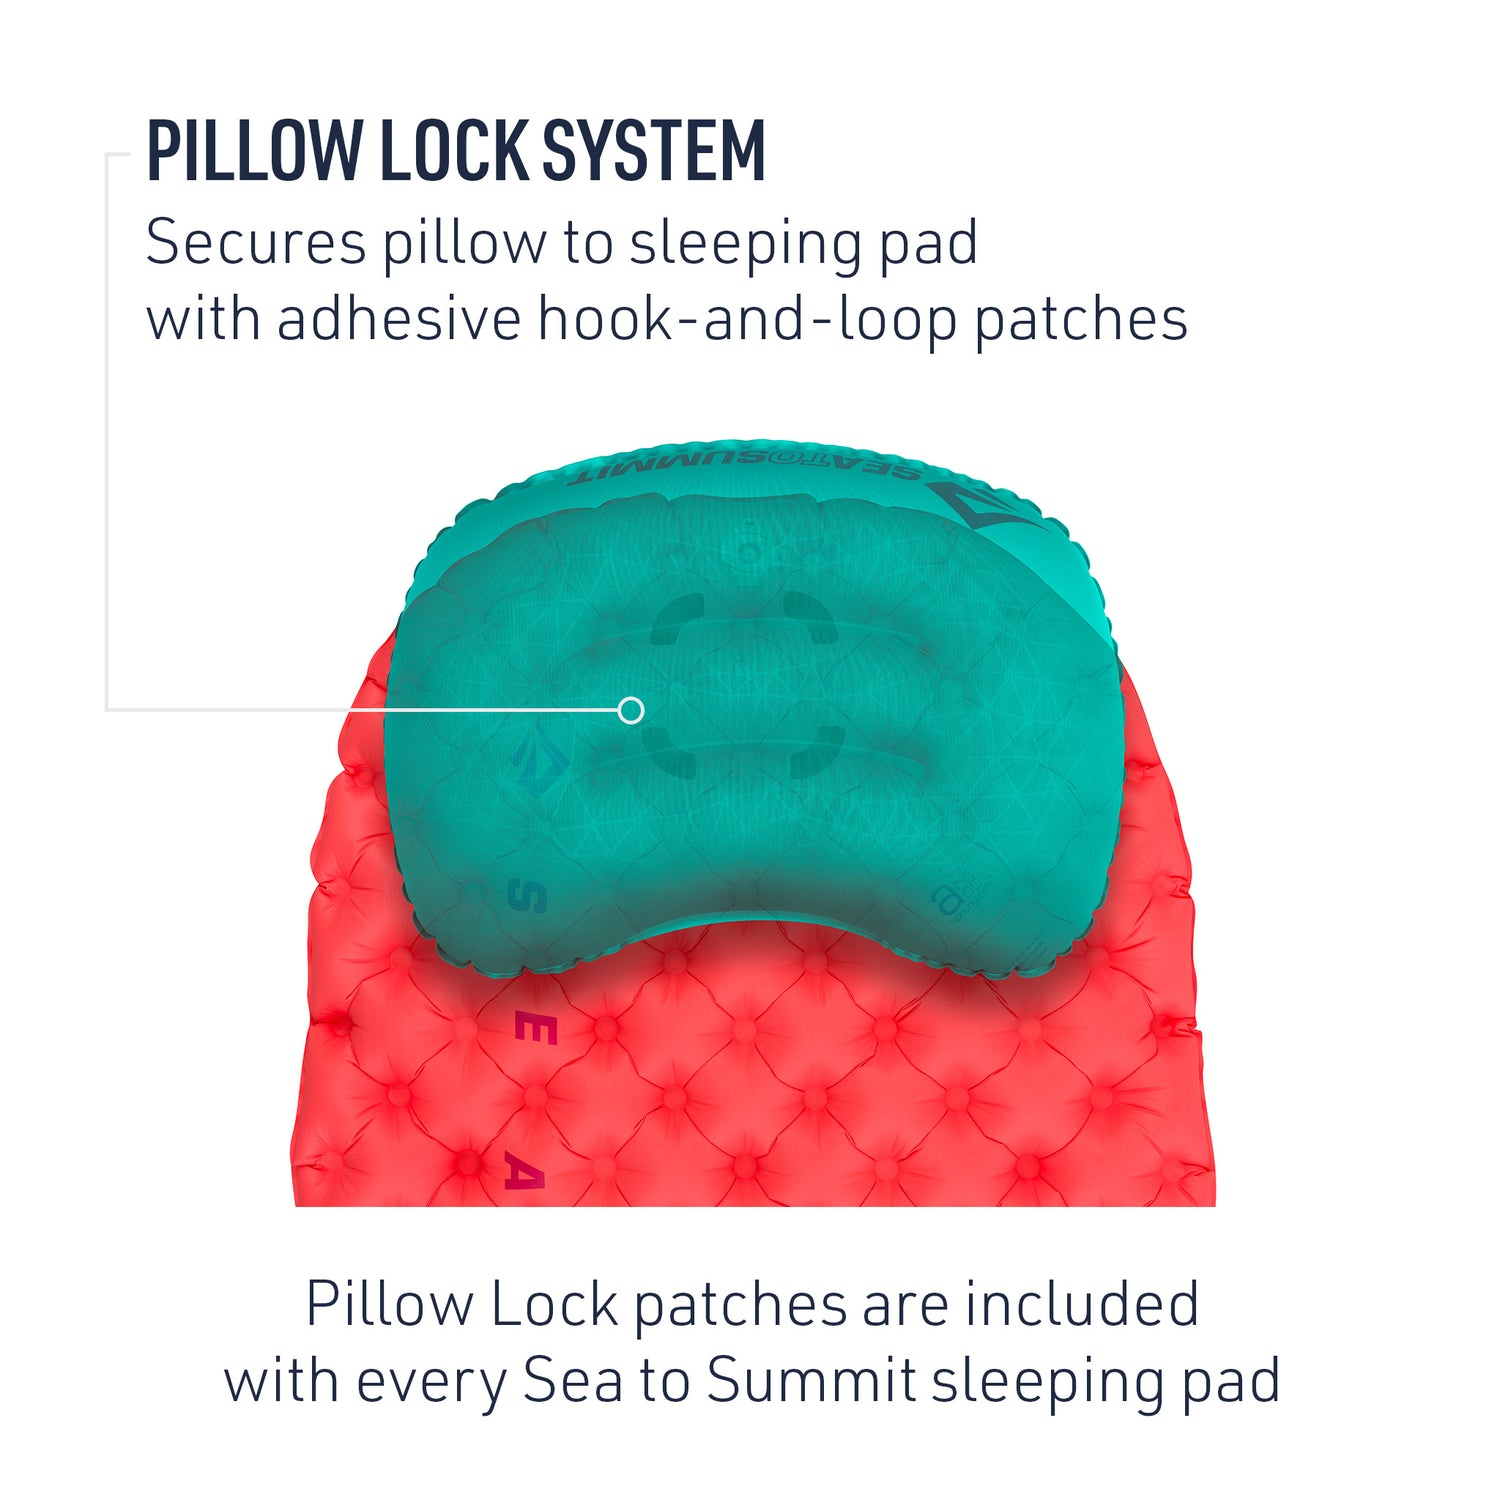 Women's UltraLight Insulated Air Sleeping Mat